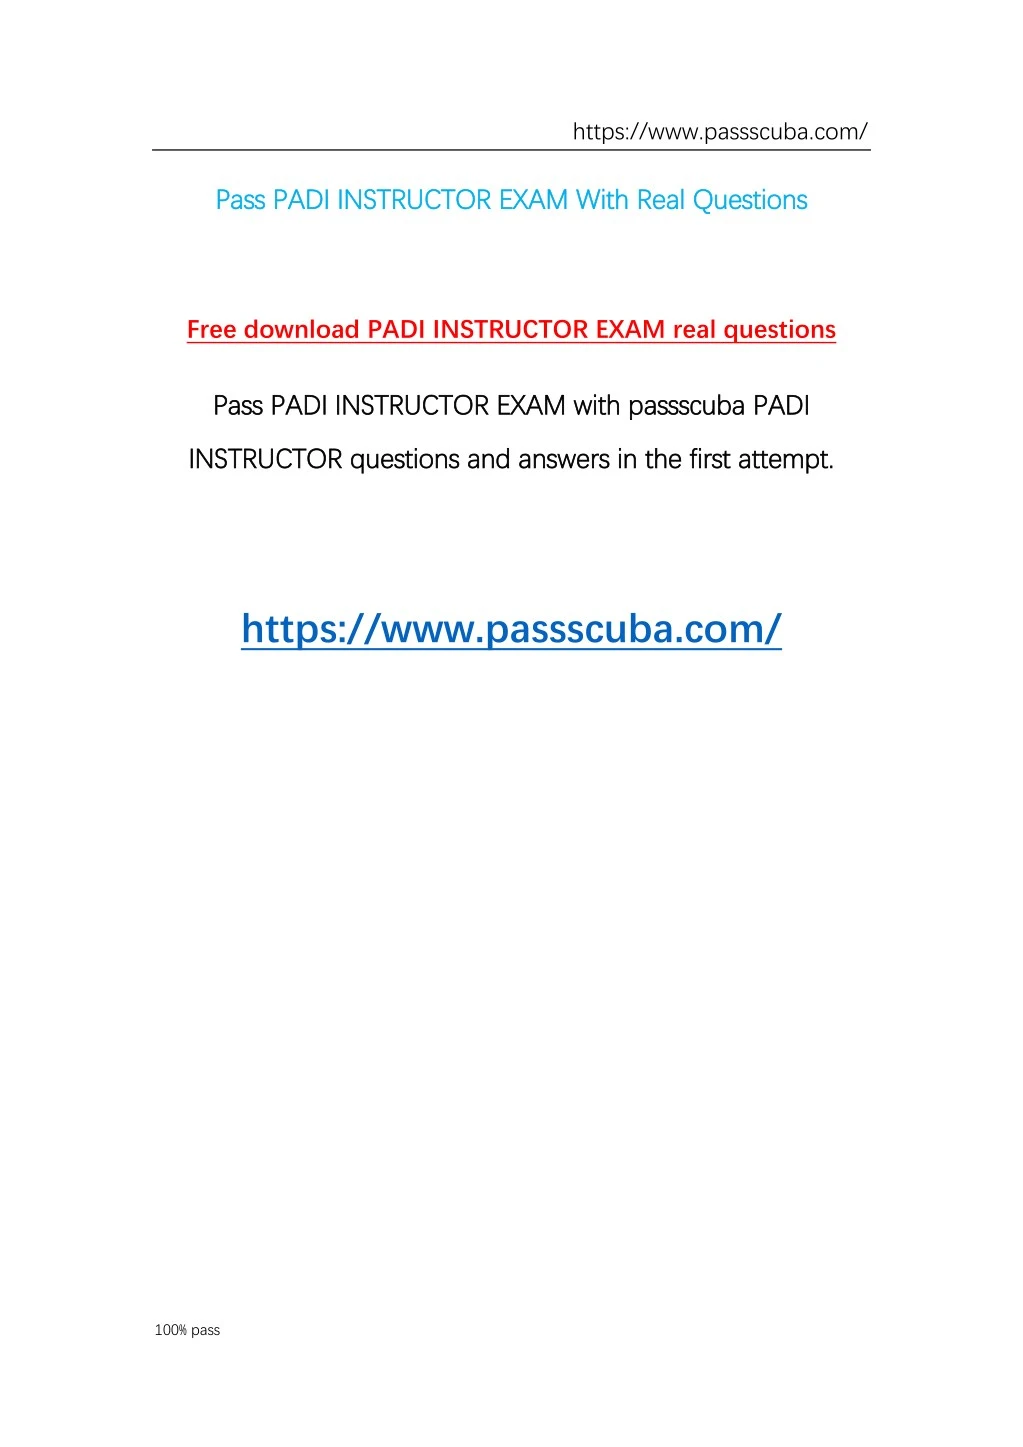 padi final exam answers pdf